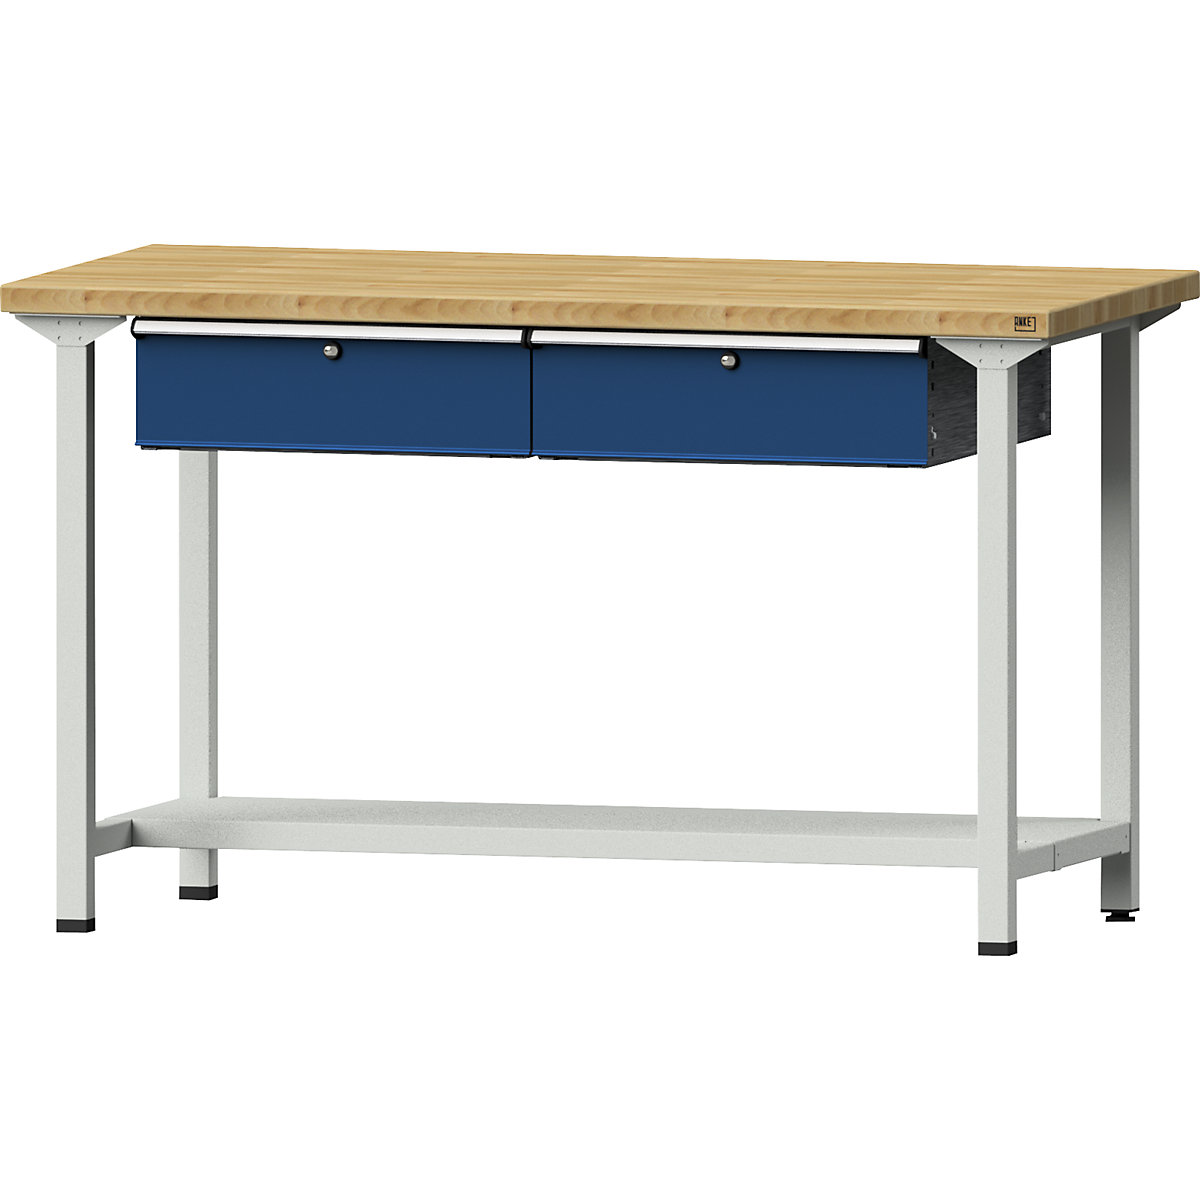 Stół warsztatowy, konstrukcja ramowa – ANKE, 2 szuflady, 1 półka, szer. 1500 mm, blat z litego drewna bukowego, wys. 890 mm-11